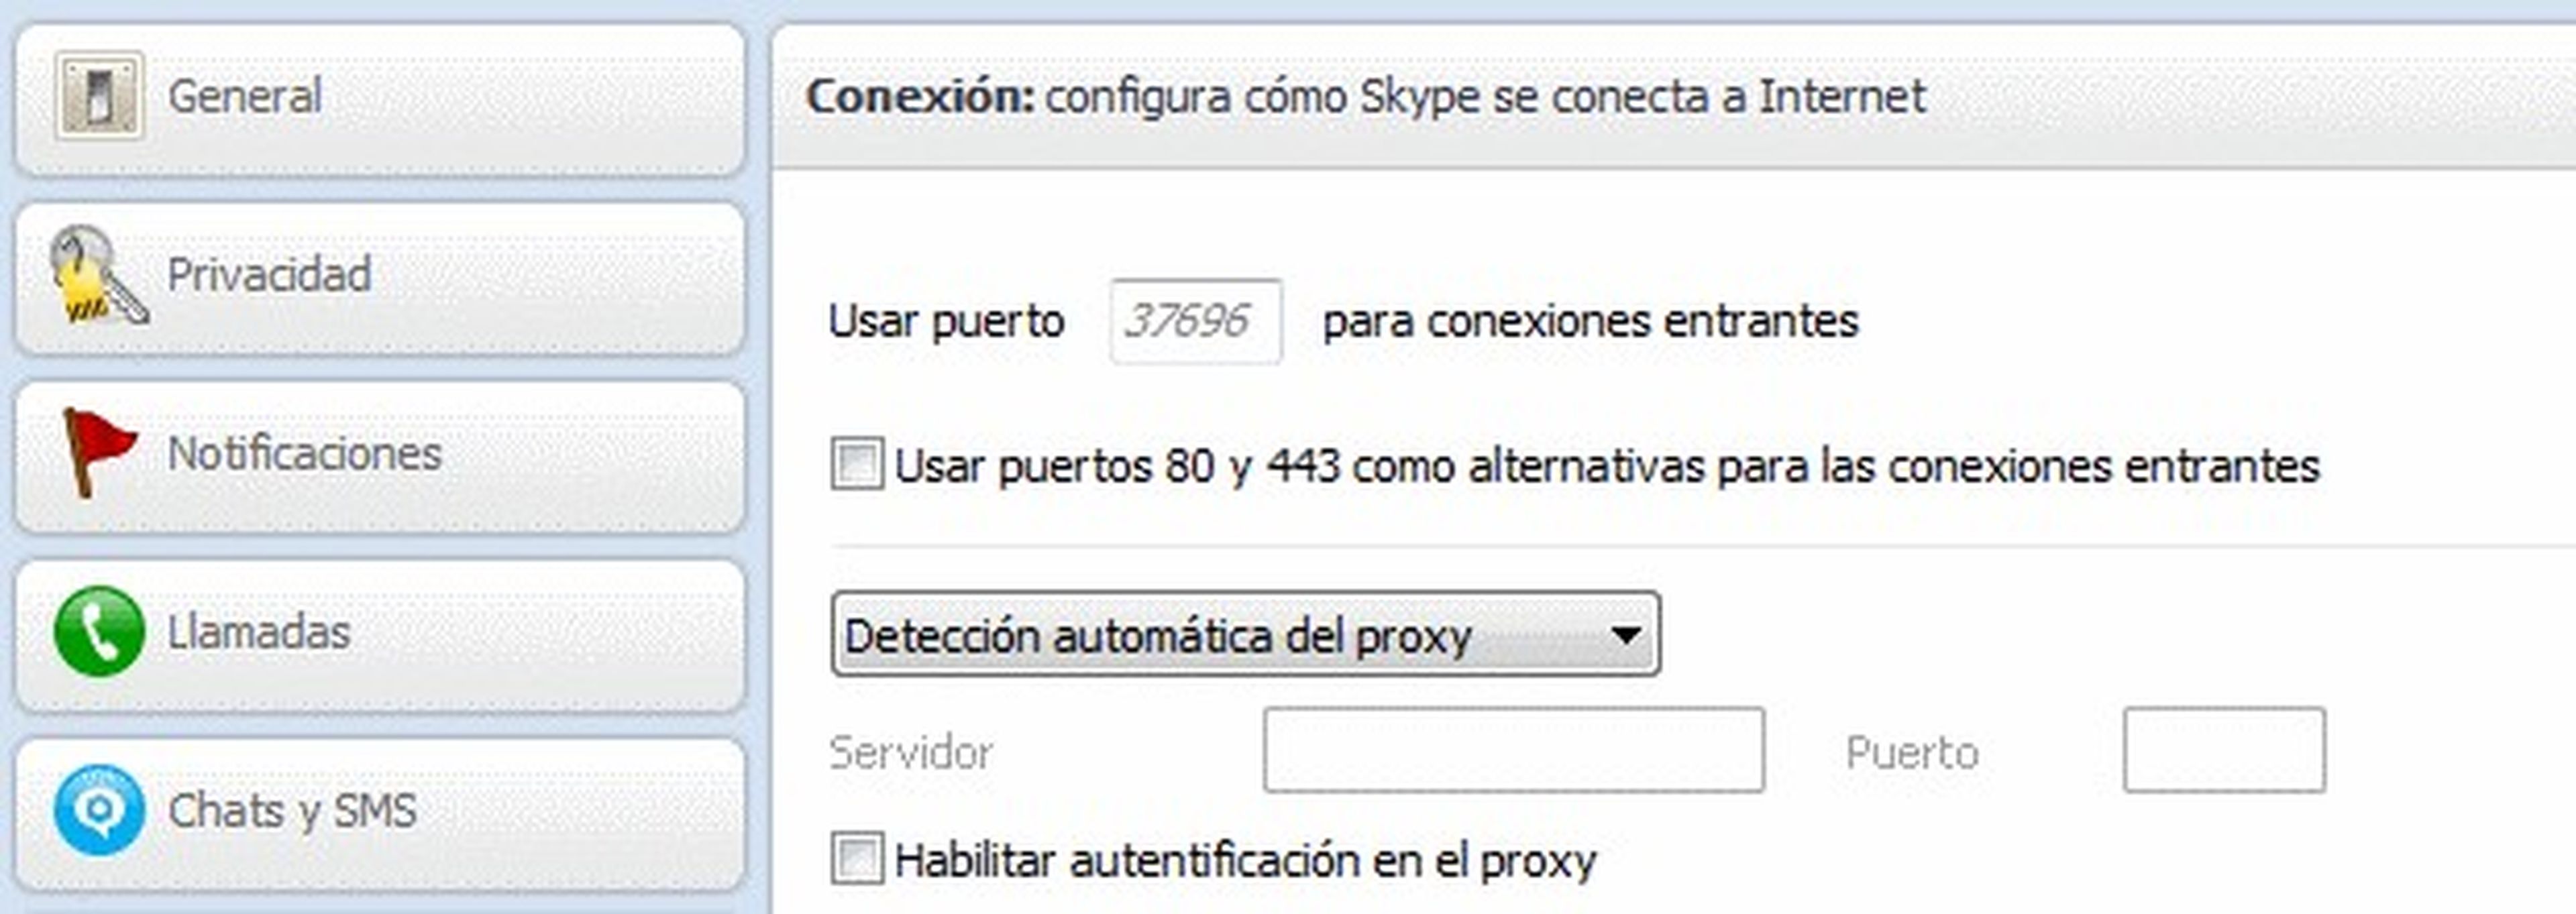 Conflicto de puertos con Skype y Xampp